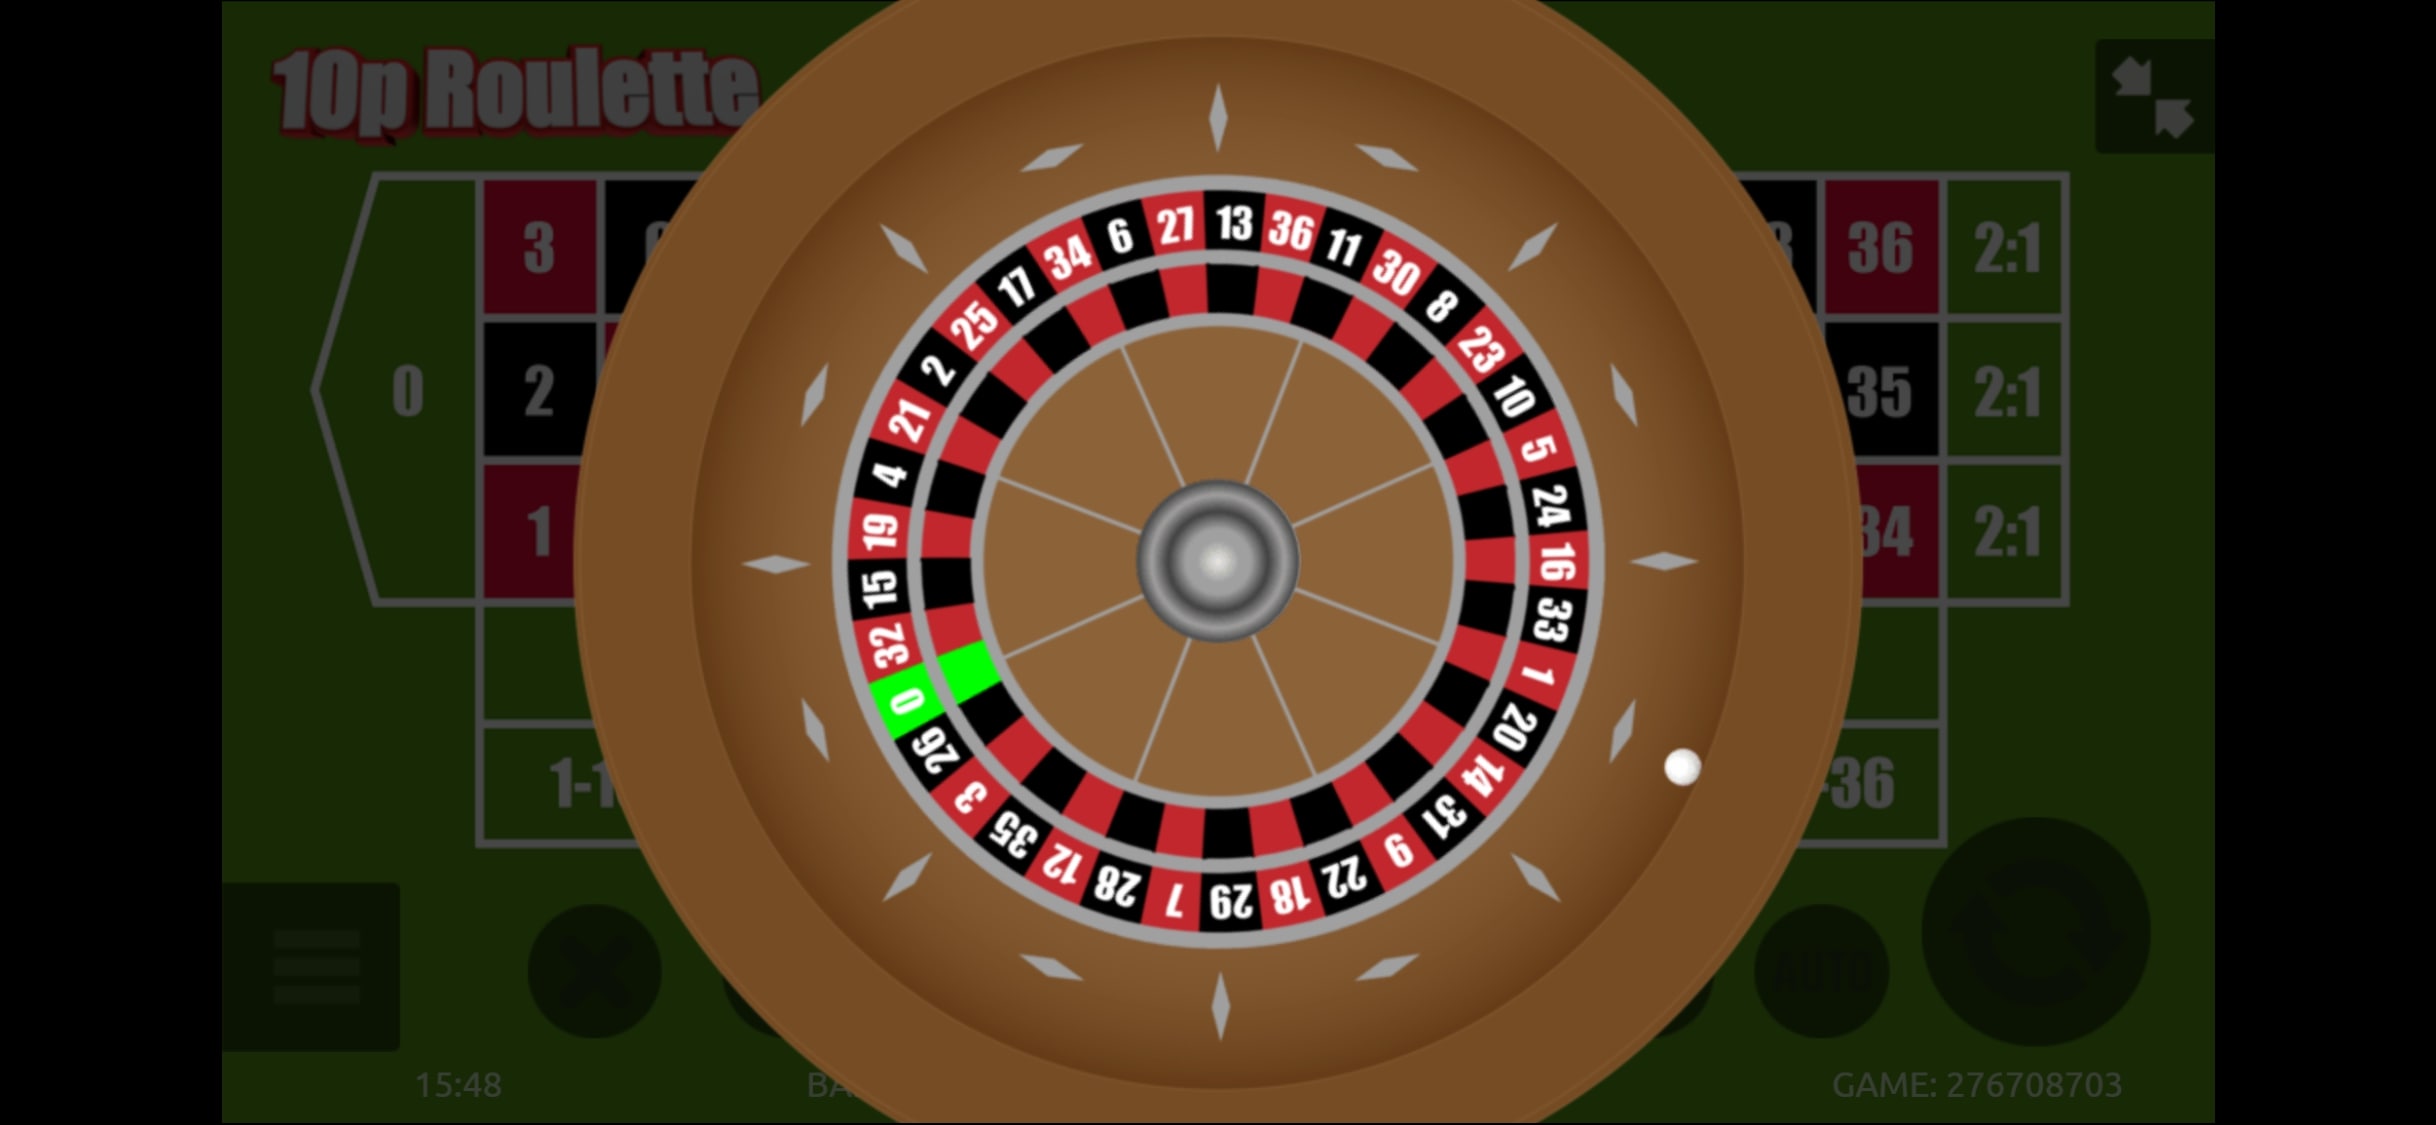 Fortune to Win Casino Mobile Casino Games Review